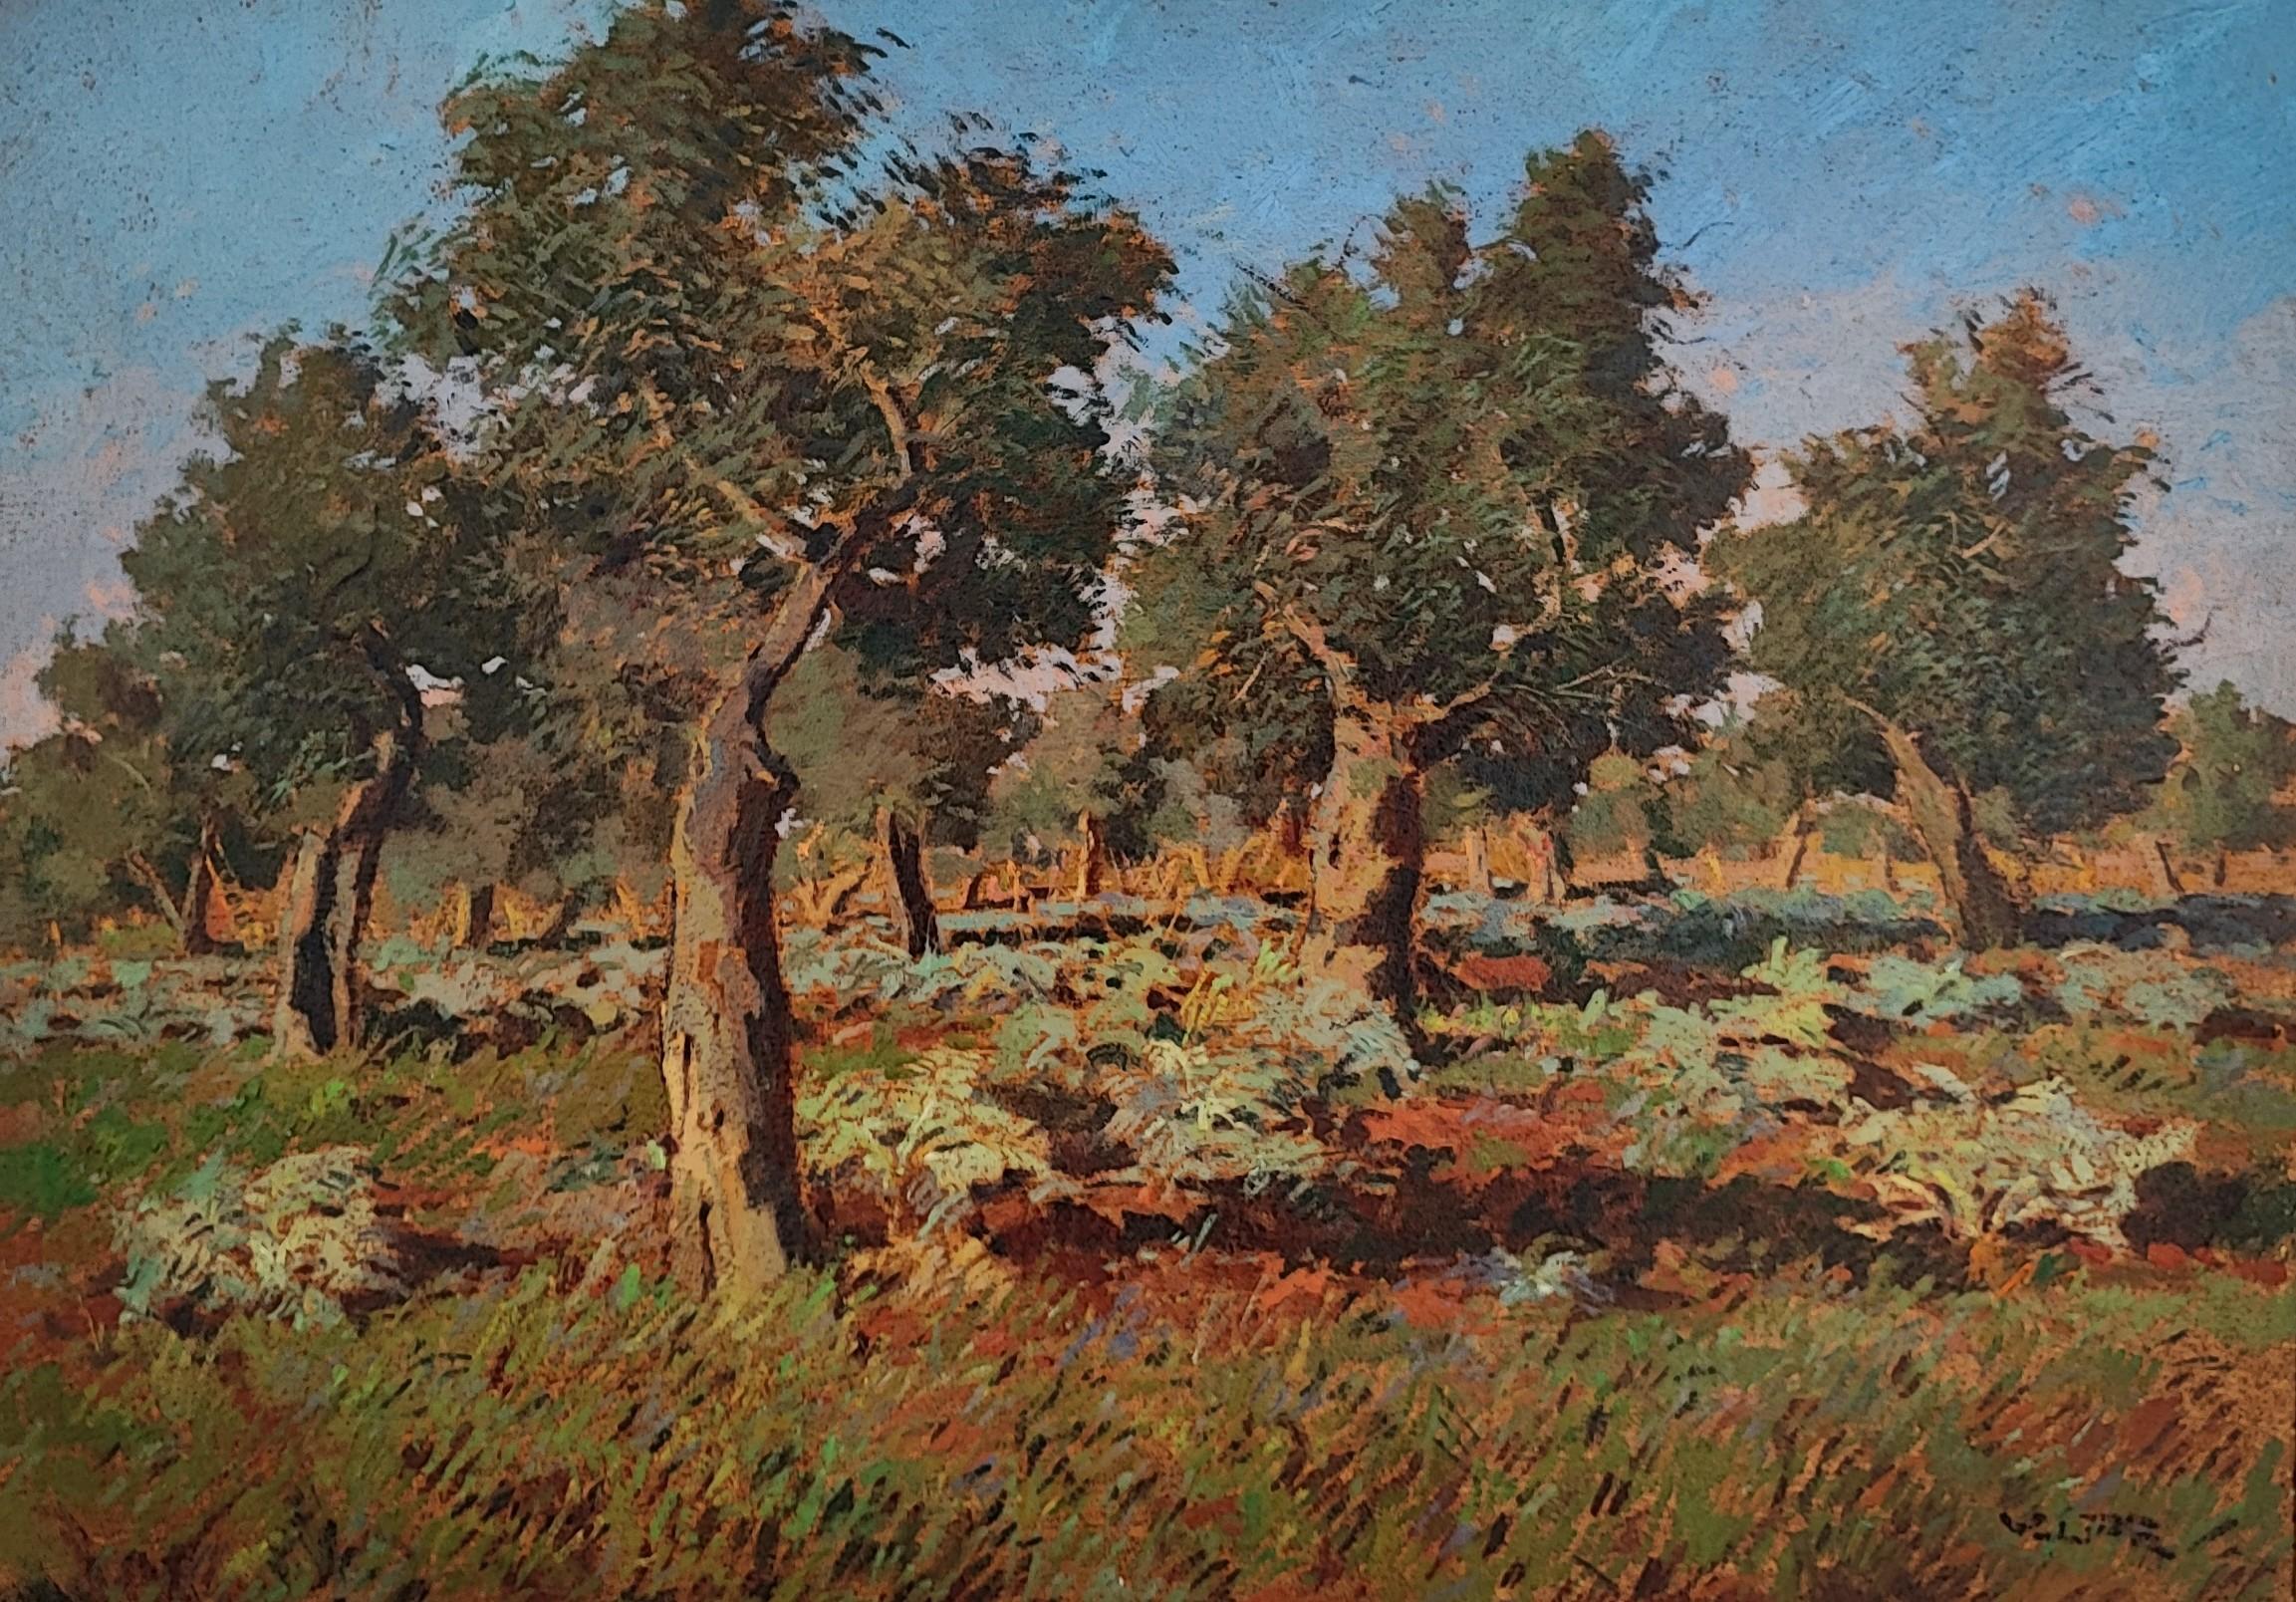 Olive grove of Livorno Salviano with artichokes